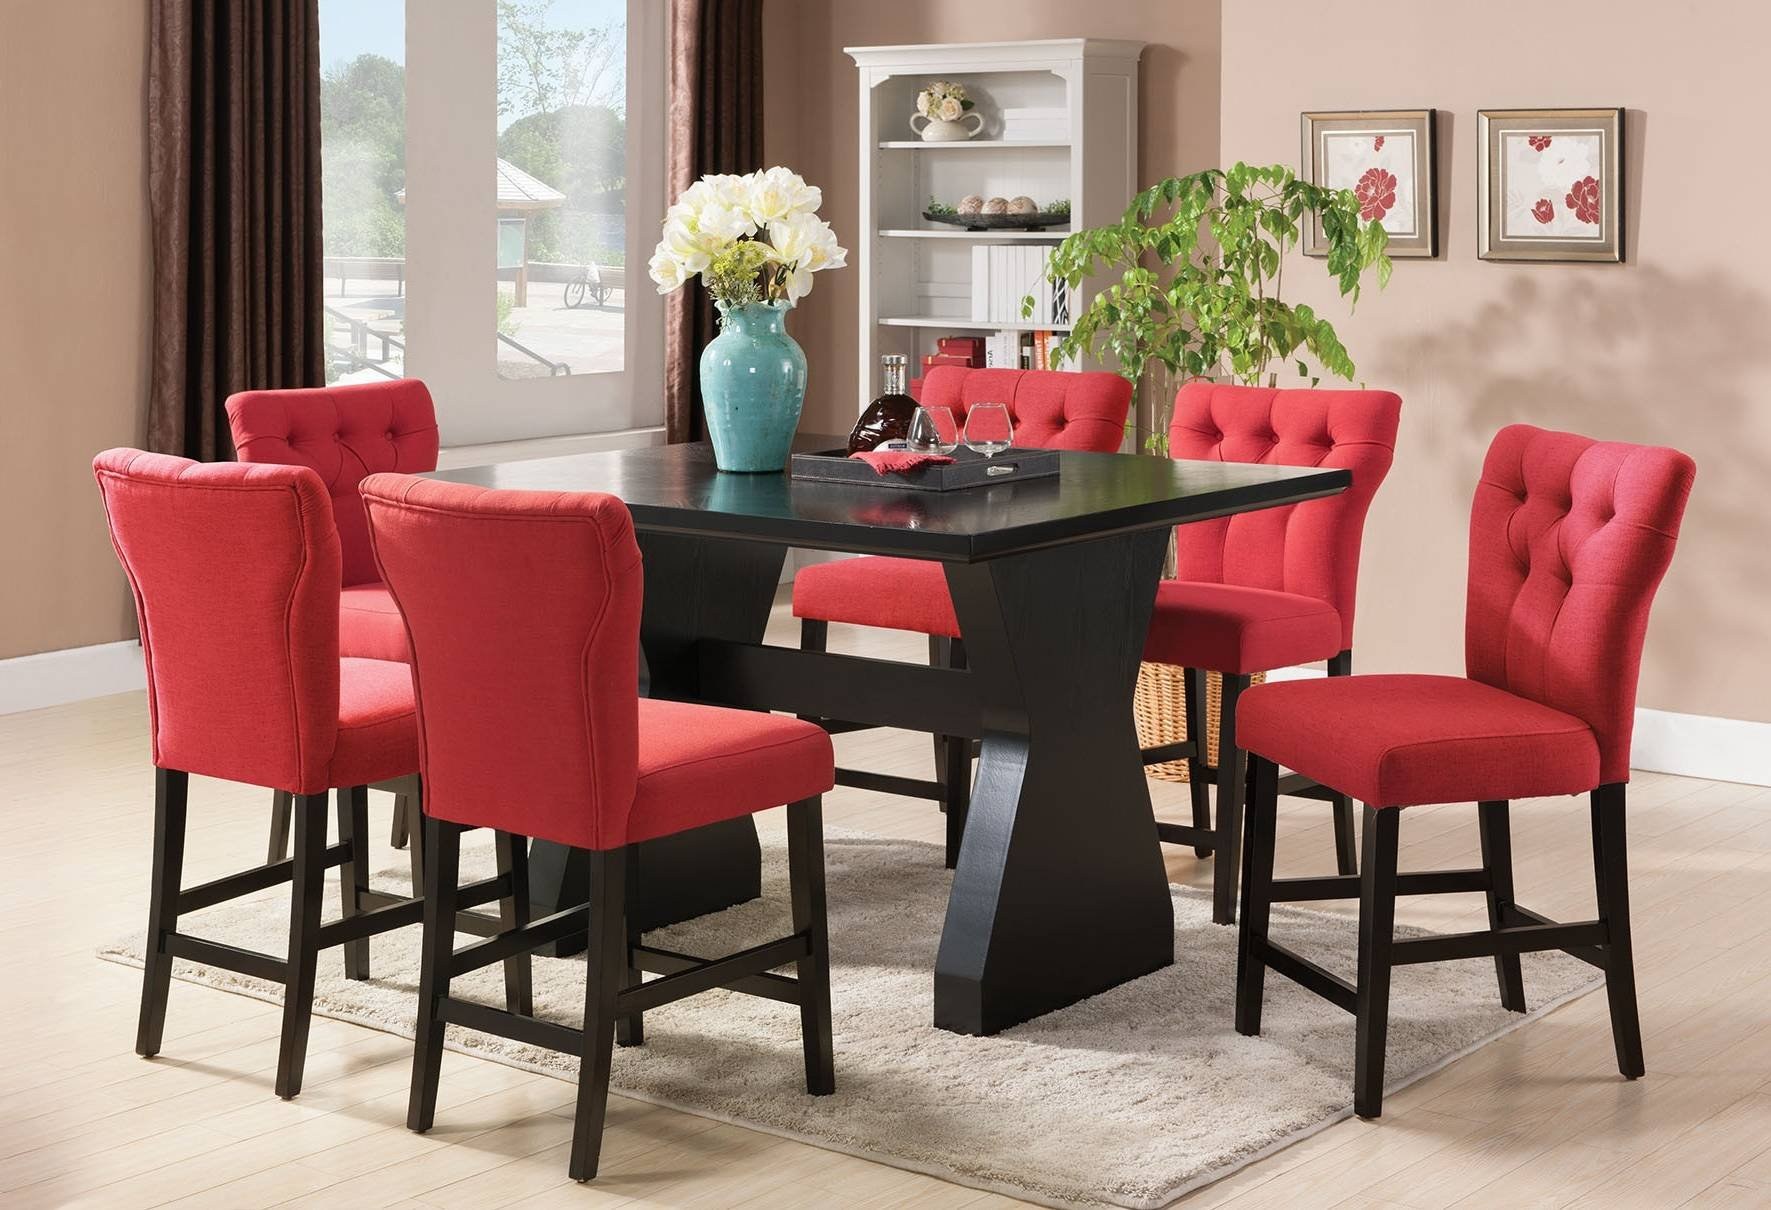 Стулья кухонные обеденные. Мягкие стулья в интерьере. Красные стулья в интерьере. Кухонный стол и стулья. Мягкие стулья для кухни.